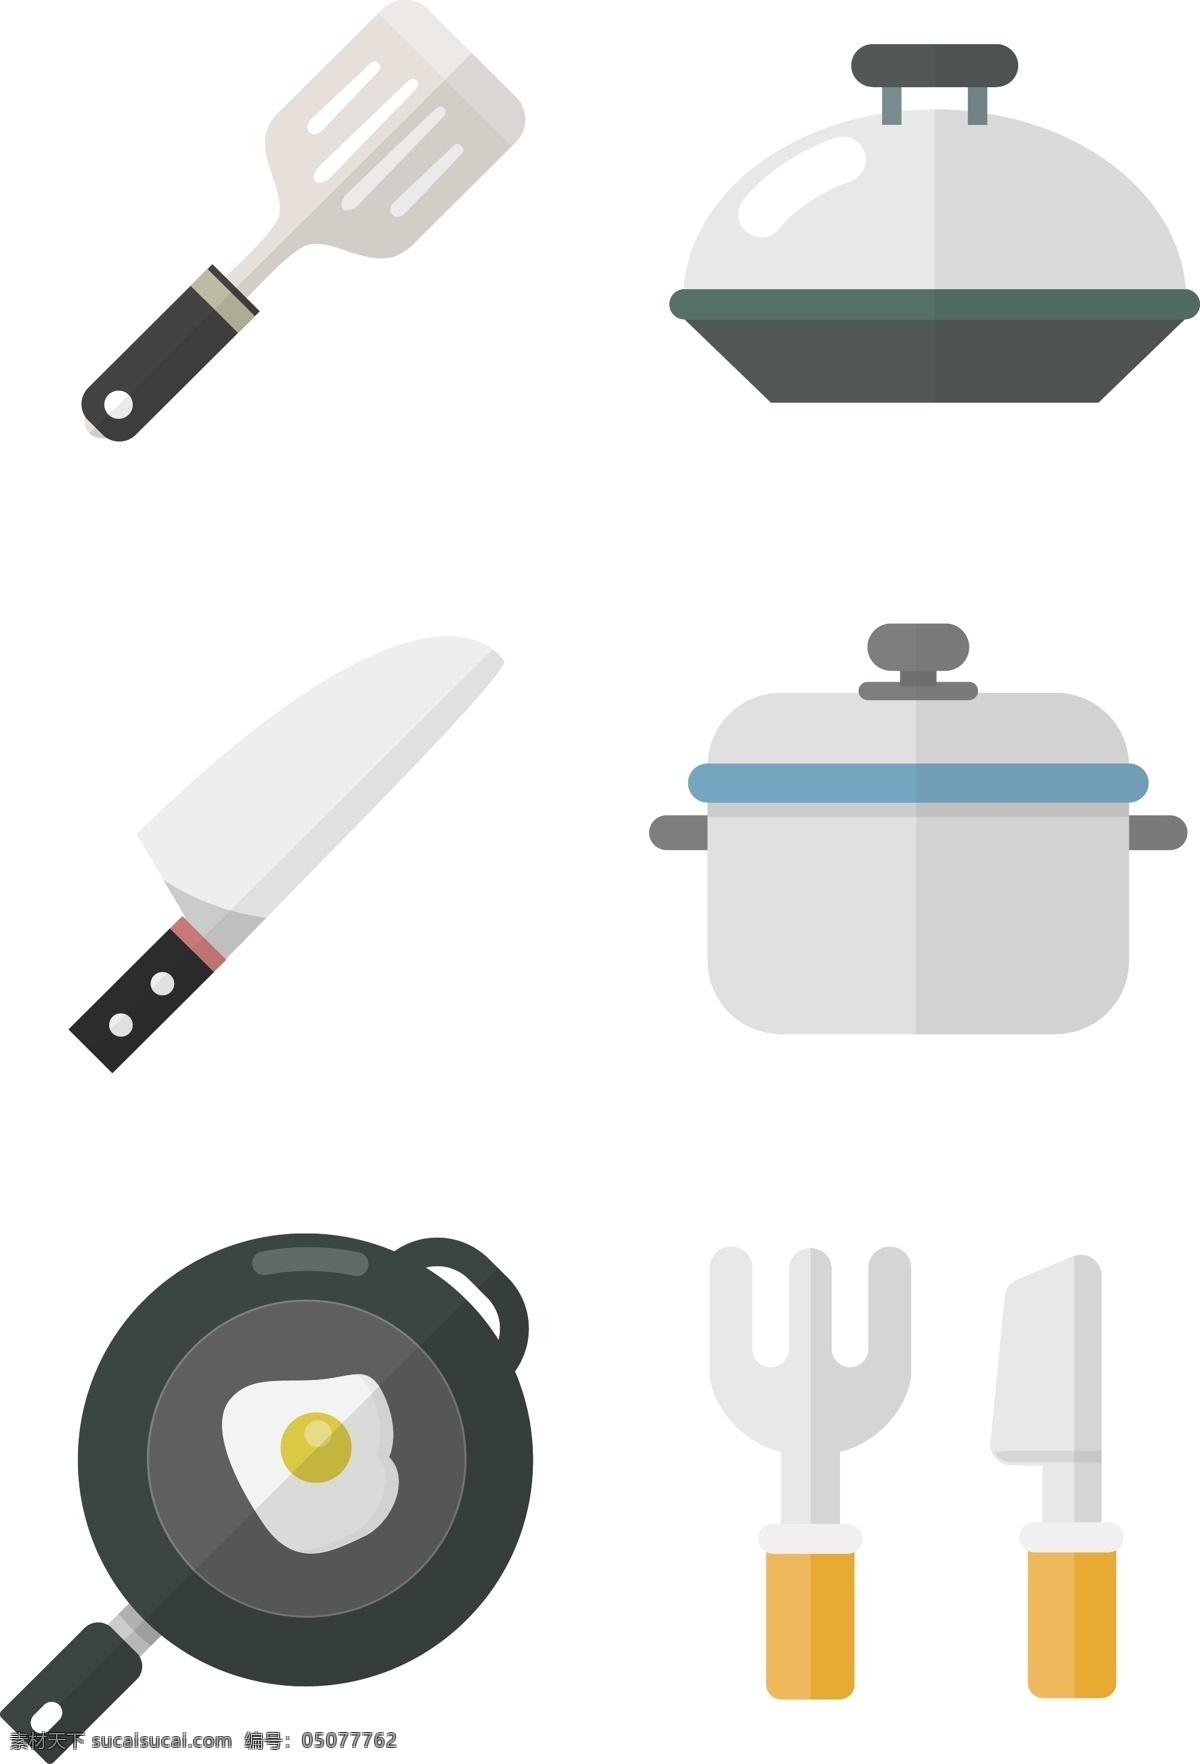 厨房用品 图标素材 扁平化 拟物 厨房 做饭 铲子 电饭锅 炒锅 菜刀 刀叉 煎锅 料理 有趣的 可爱的